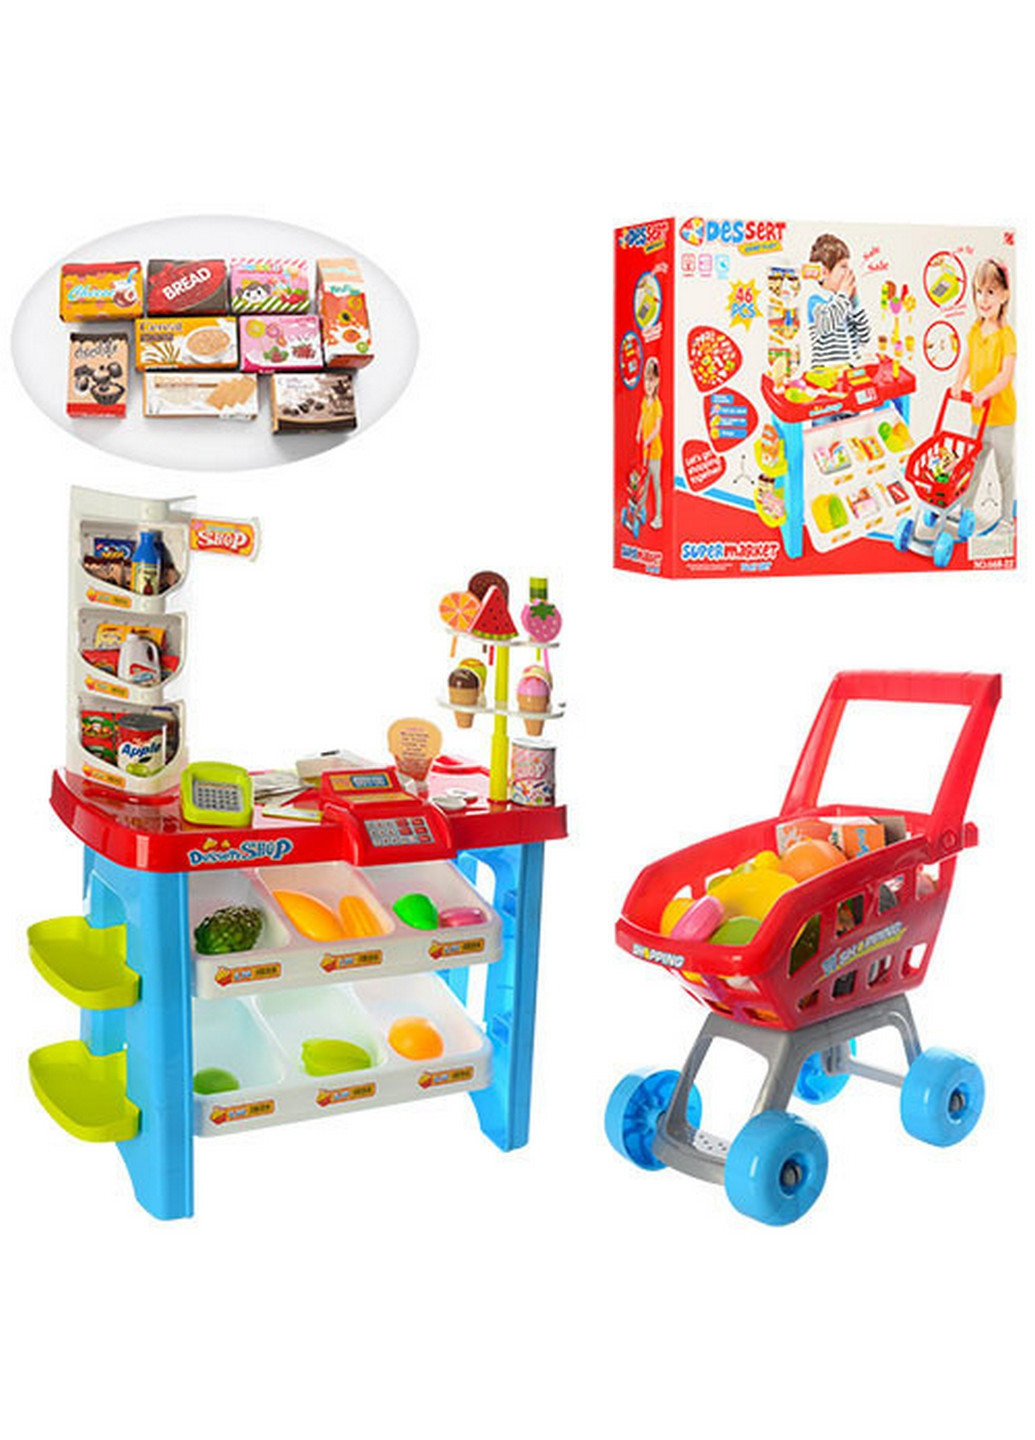 Детский игровой набор магазин с корзинкой продуктов 57х45х17 см Metr+ (260499308)